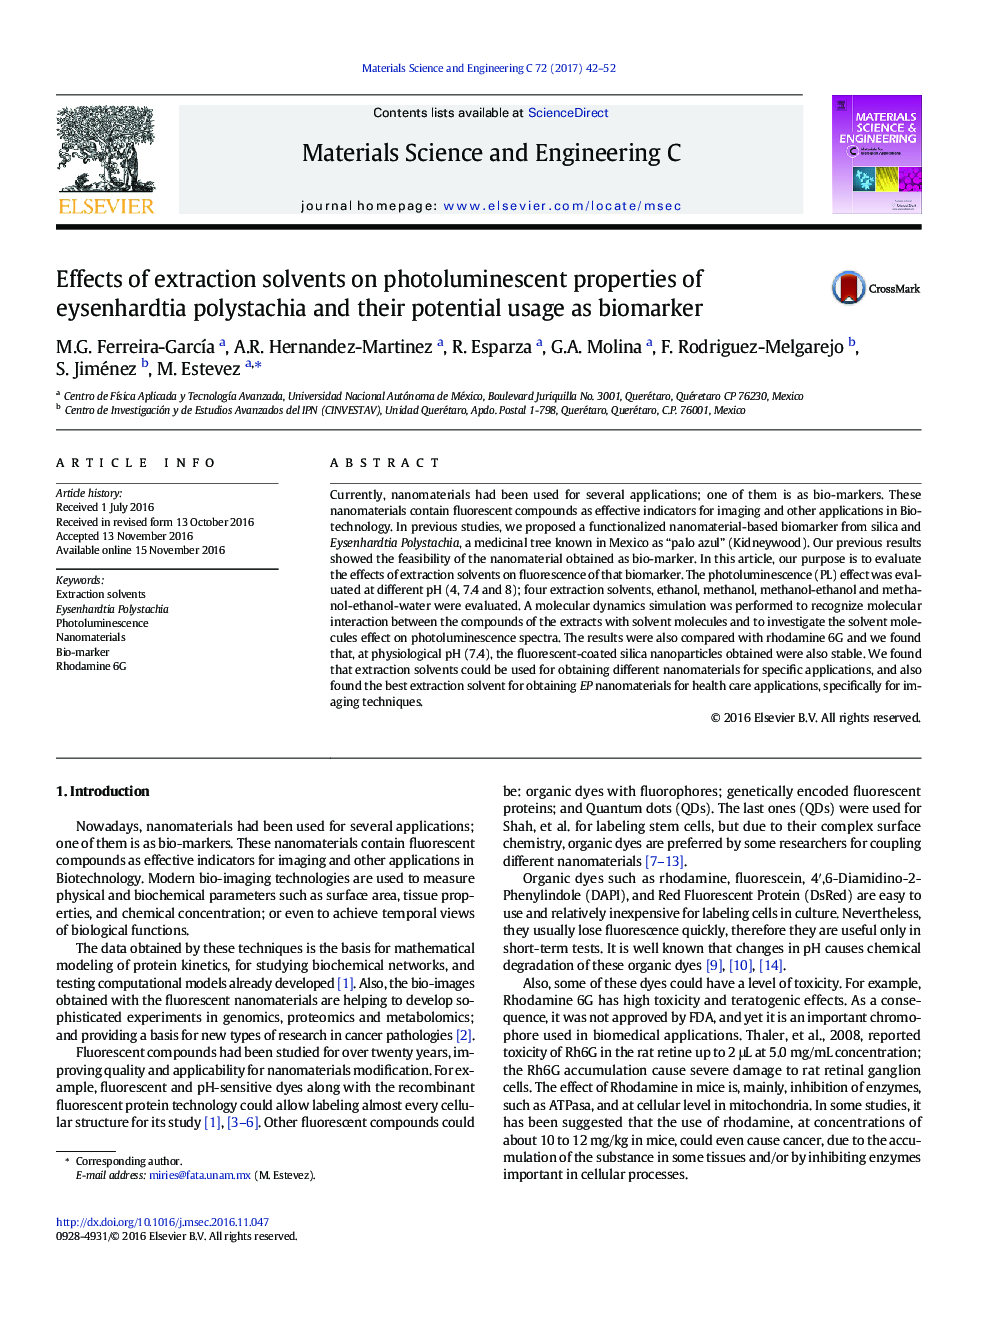 اثرات حلال های استخراج بر خواص فوتولومینسانس پلیاستاشیا ایزناردتی و کاربرد بالقوه آنها به عنوان بیومارکر 